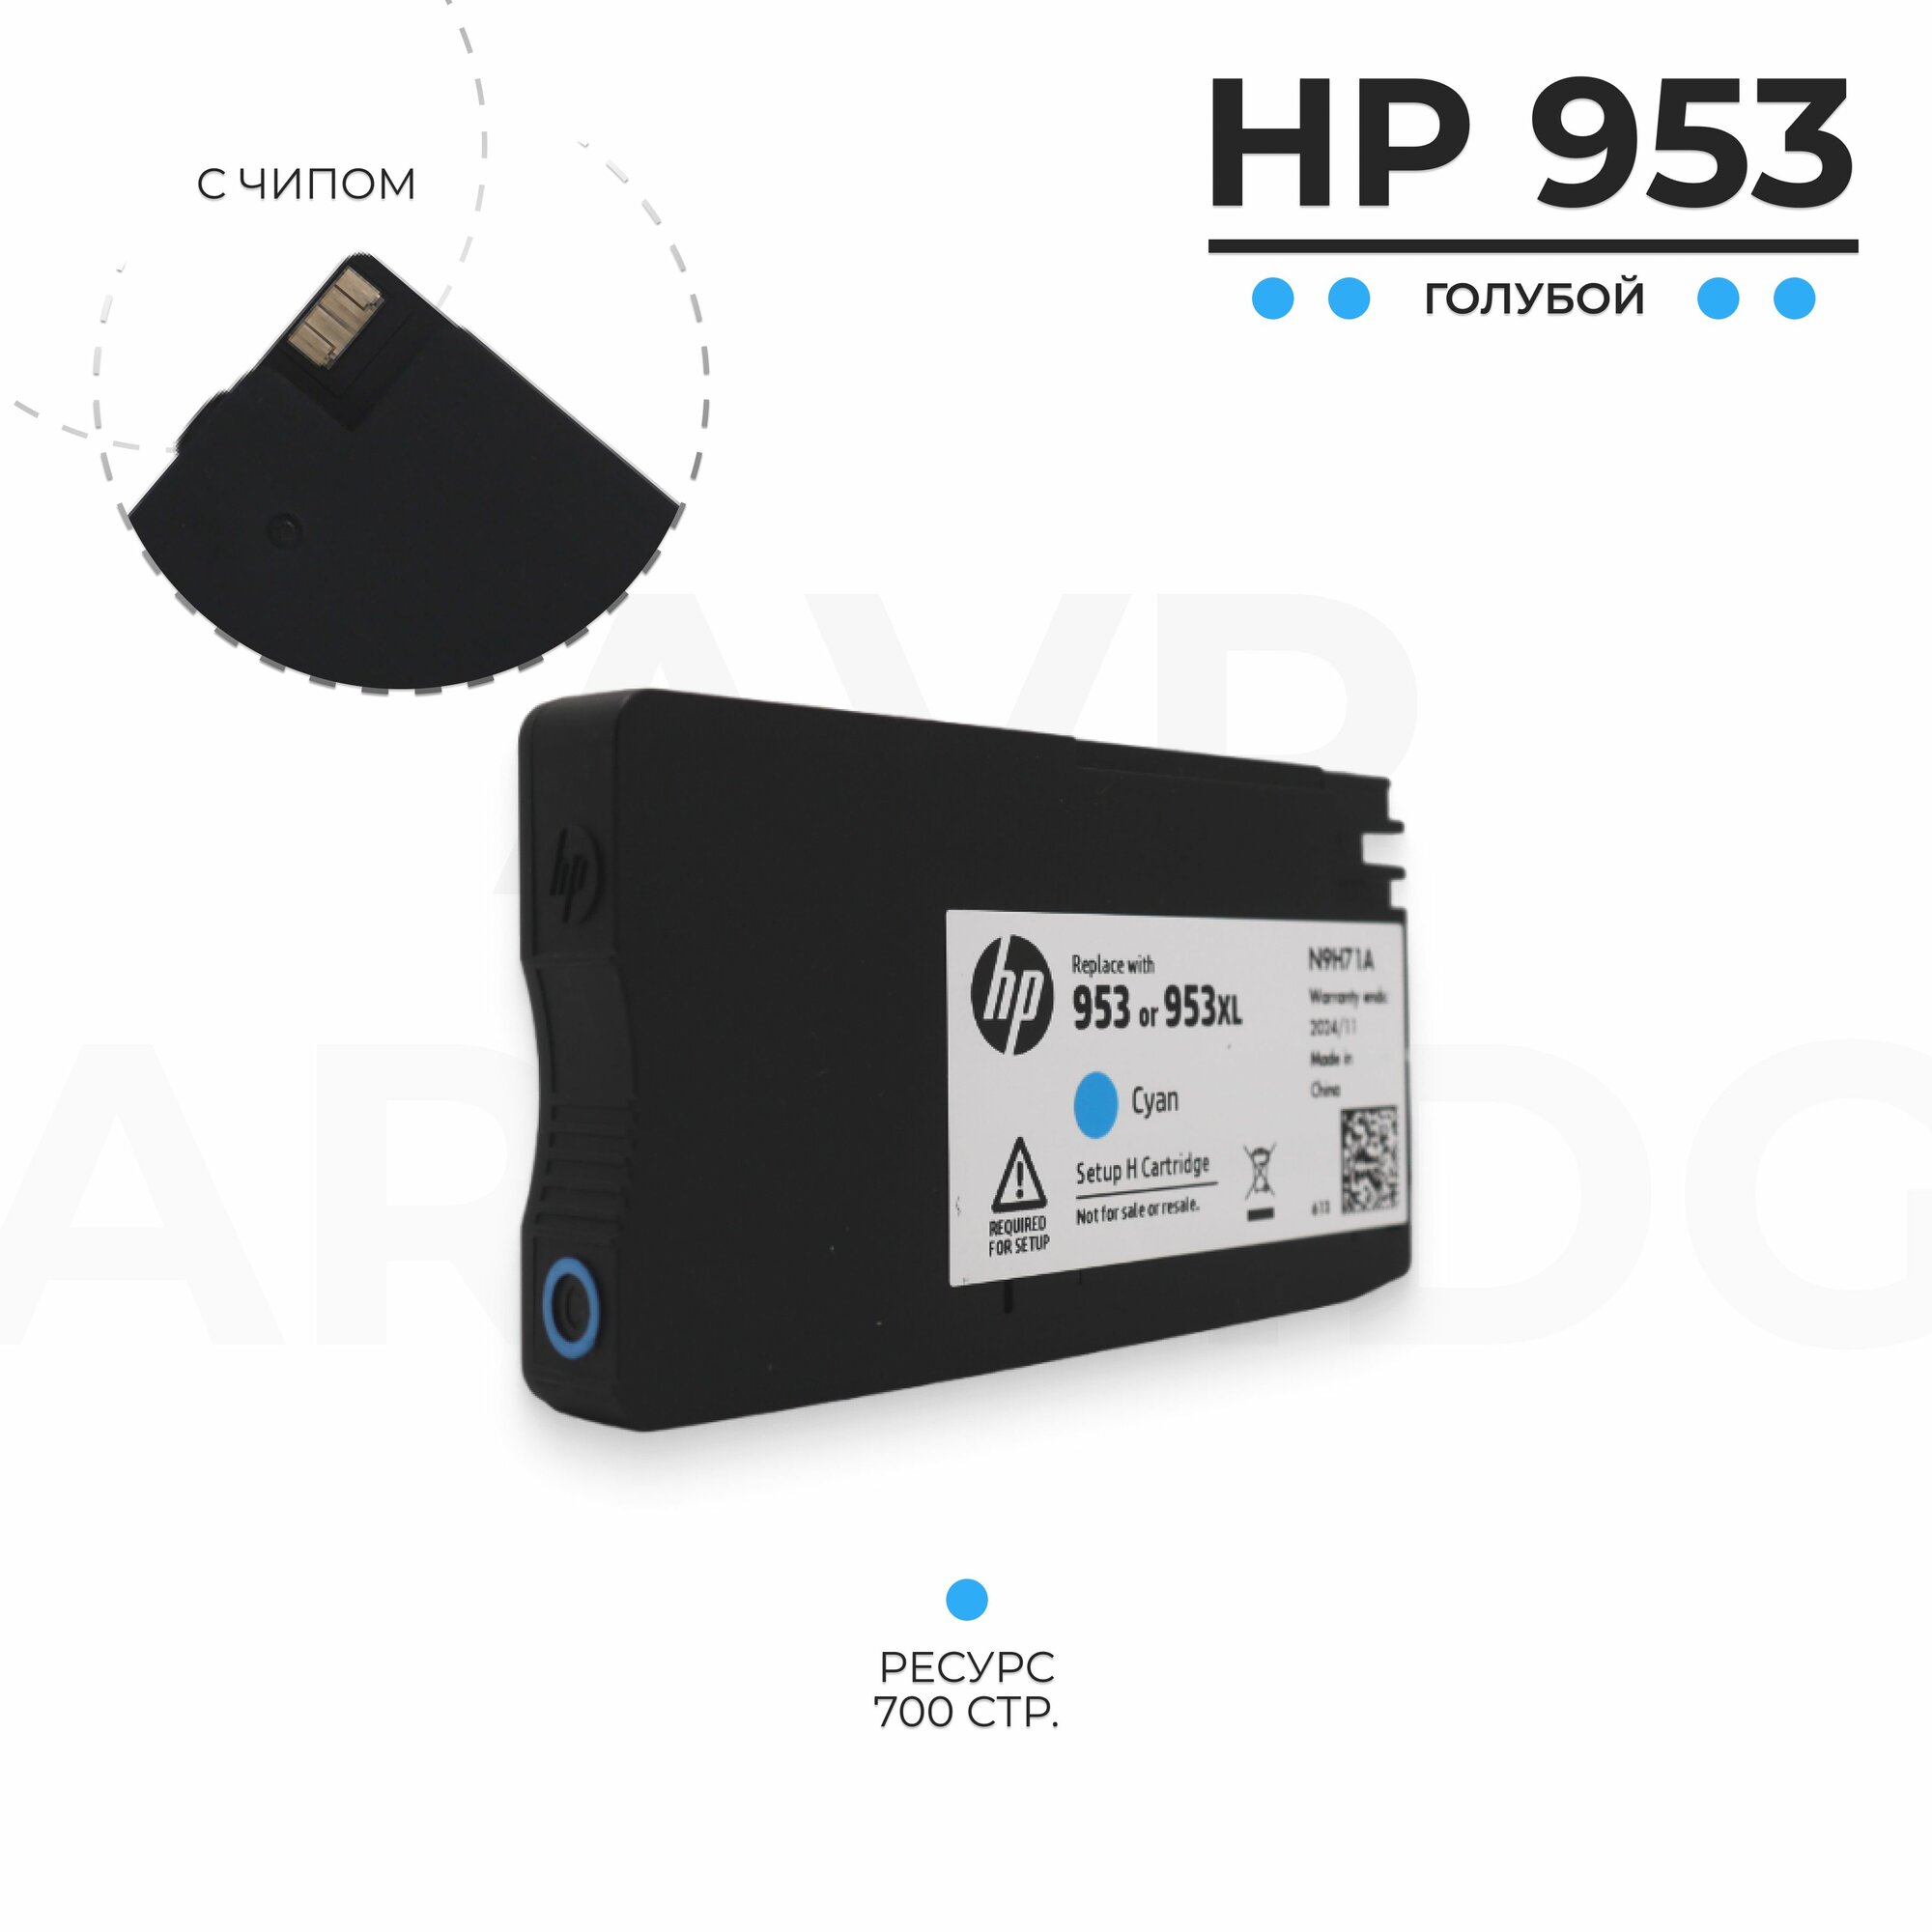 Картридж HP 953 для струйного принтера OfficeJet, голубой